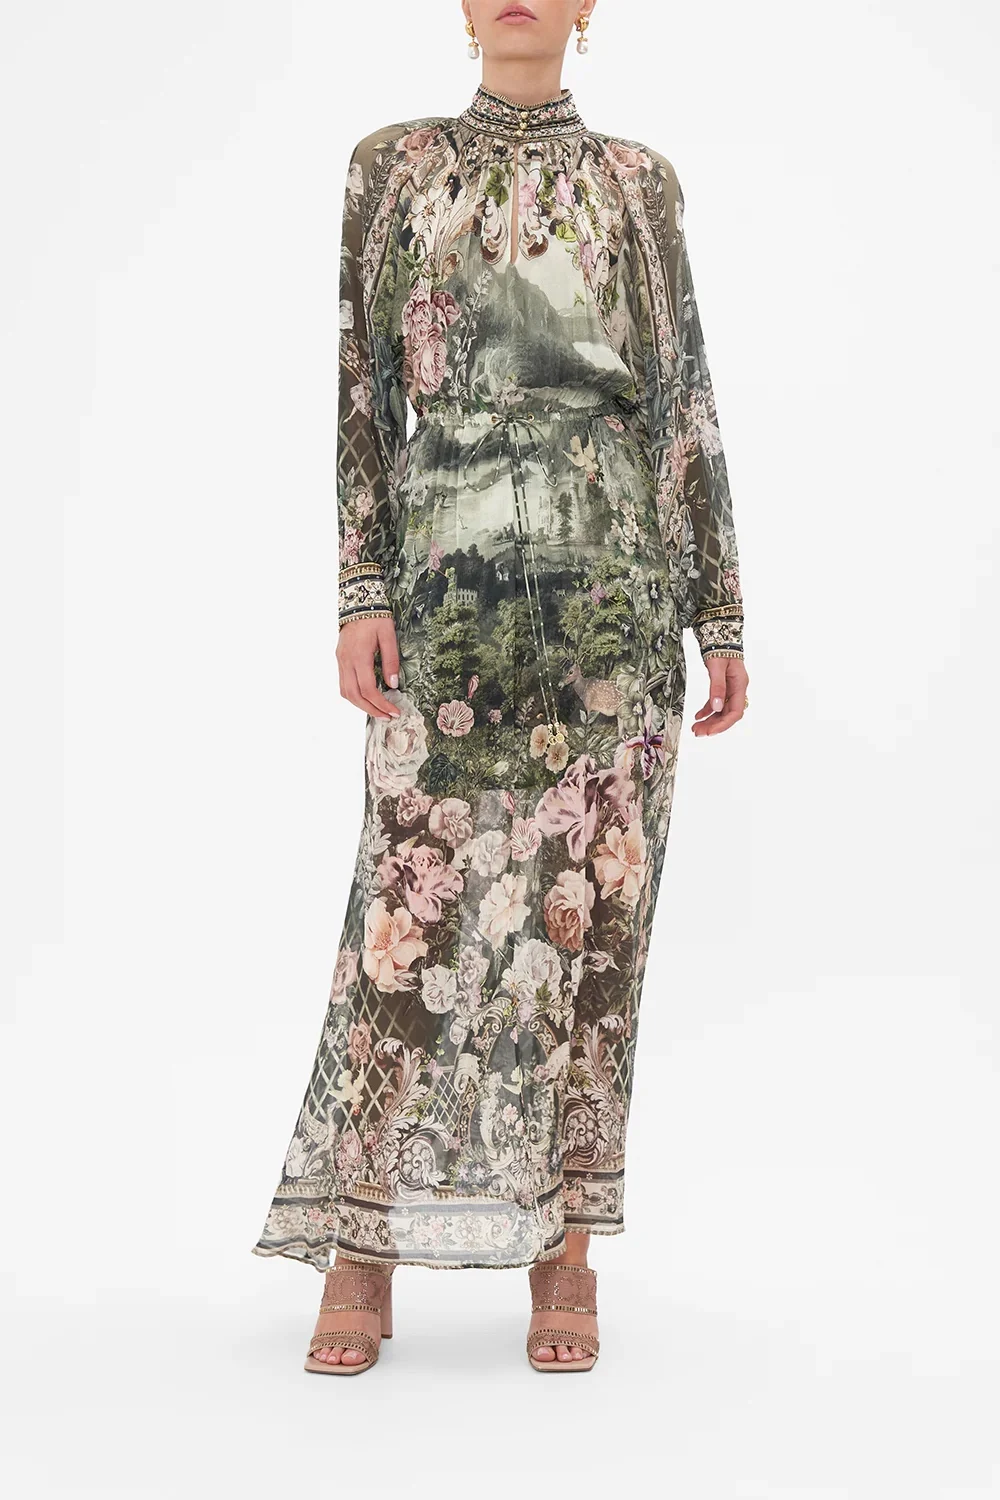 

100% настоящий шелк женский новый элегантный шикарный роскошный подиумный богемный цветочный принт с длинными рукавами-фонариками диагональю